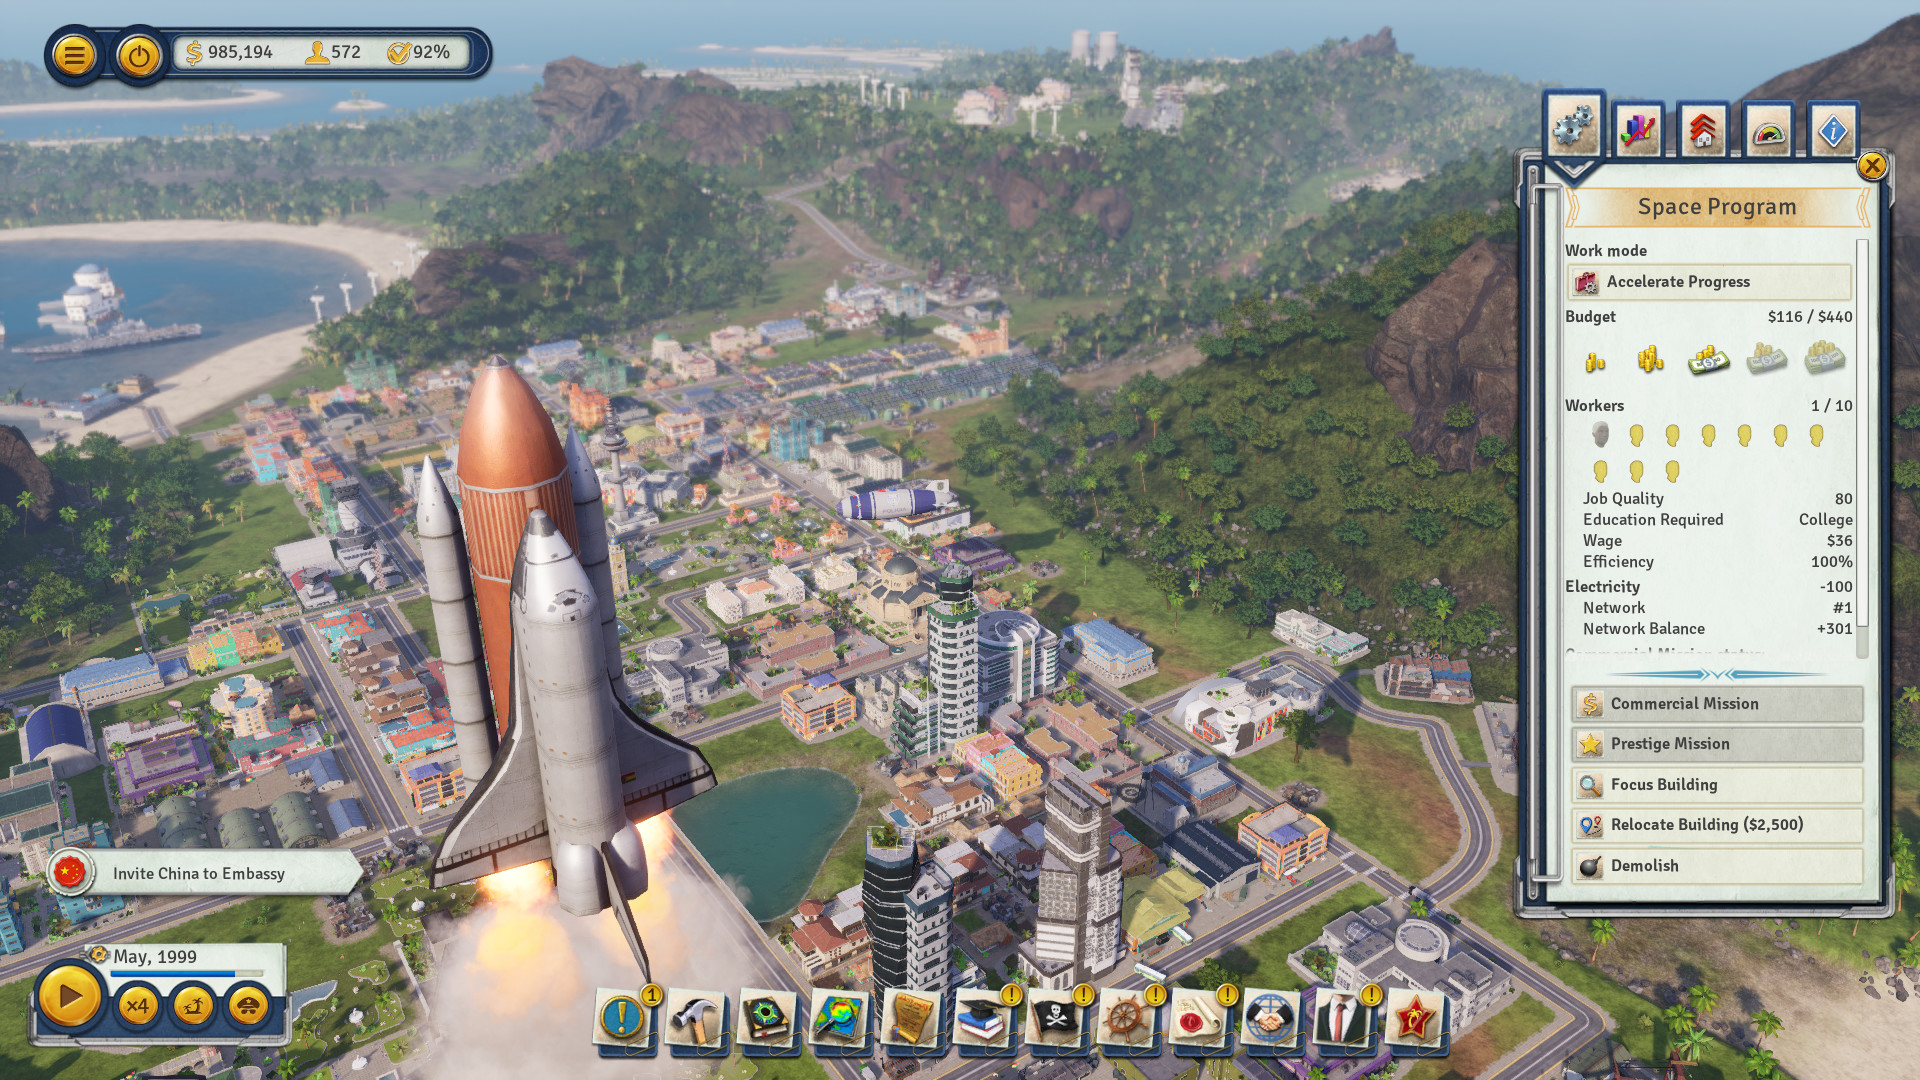 تحميل لعبة بناء المدن Tropico 6: El Prez Edition - 2019 نسخة ريباك بمساحة  4.8 GB Ss_b946d6ef6a31d60083cd228c454ecd94ddd4322d.1920x1080